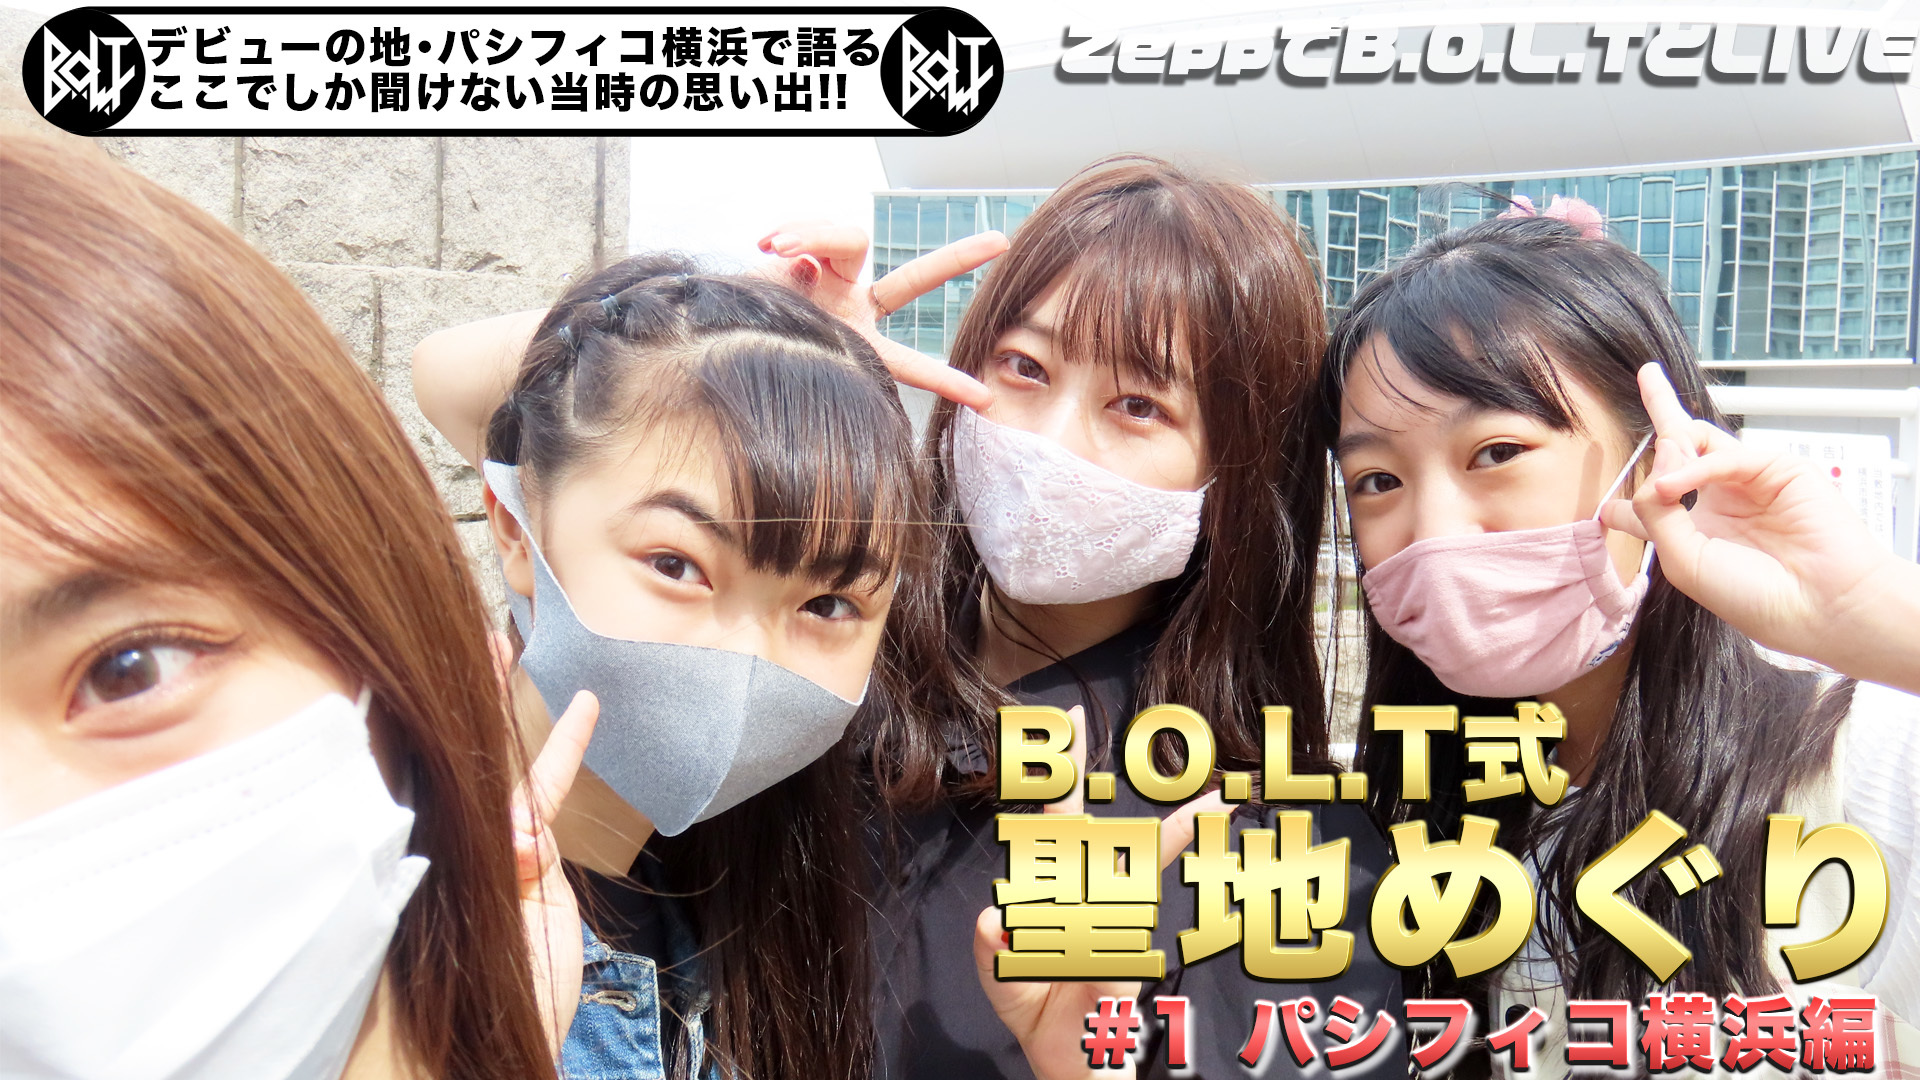 「B.O.L.T式 聖地めぐり#1 〜パシフィコ横浜編〜」